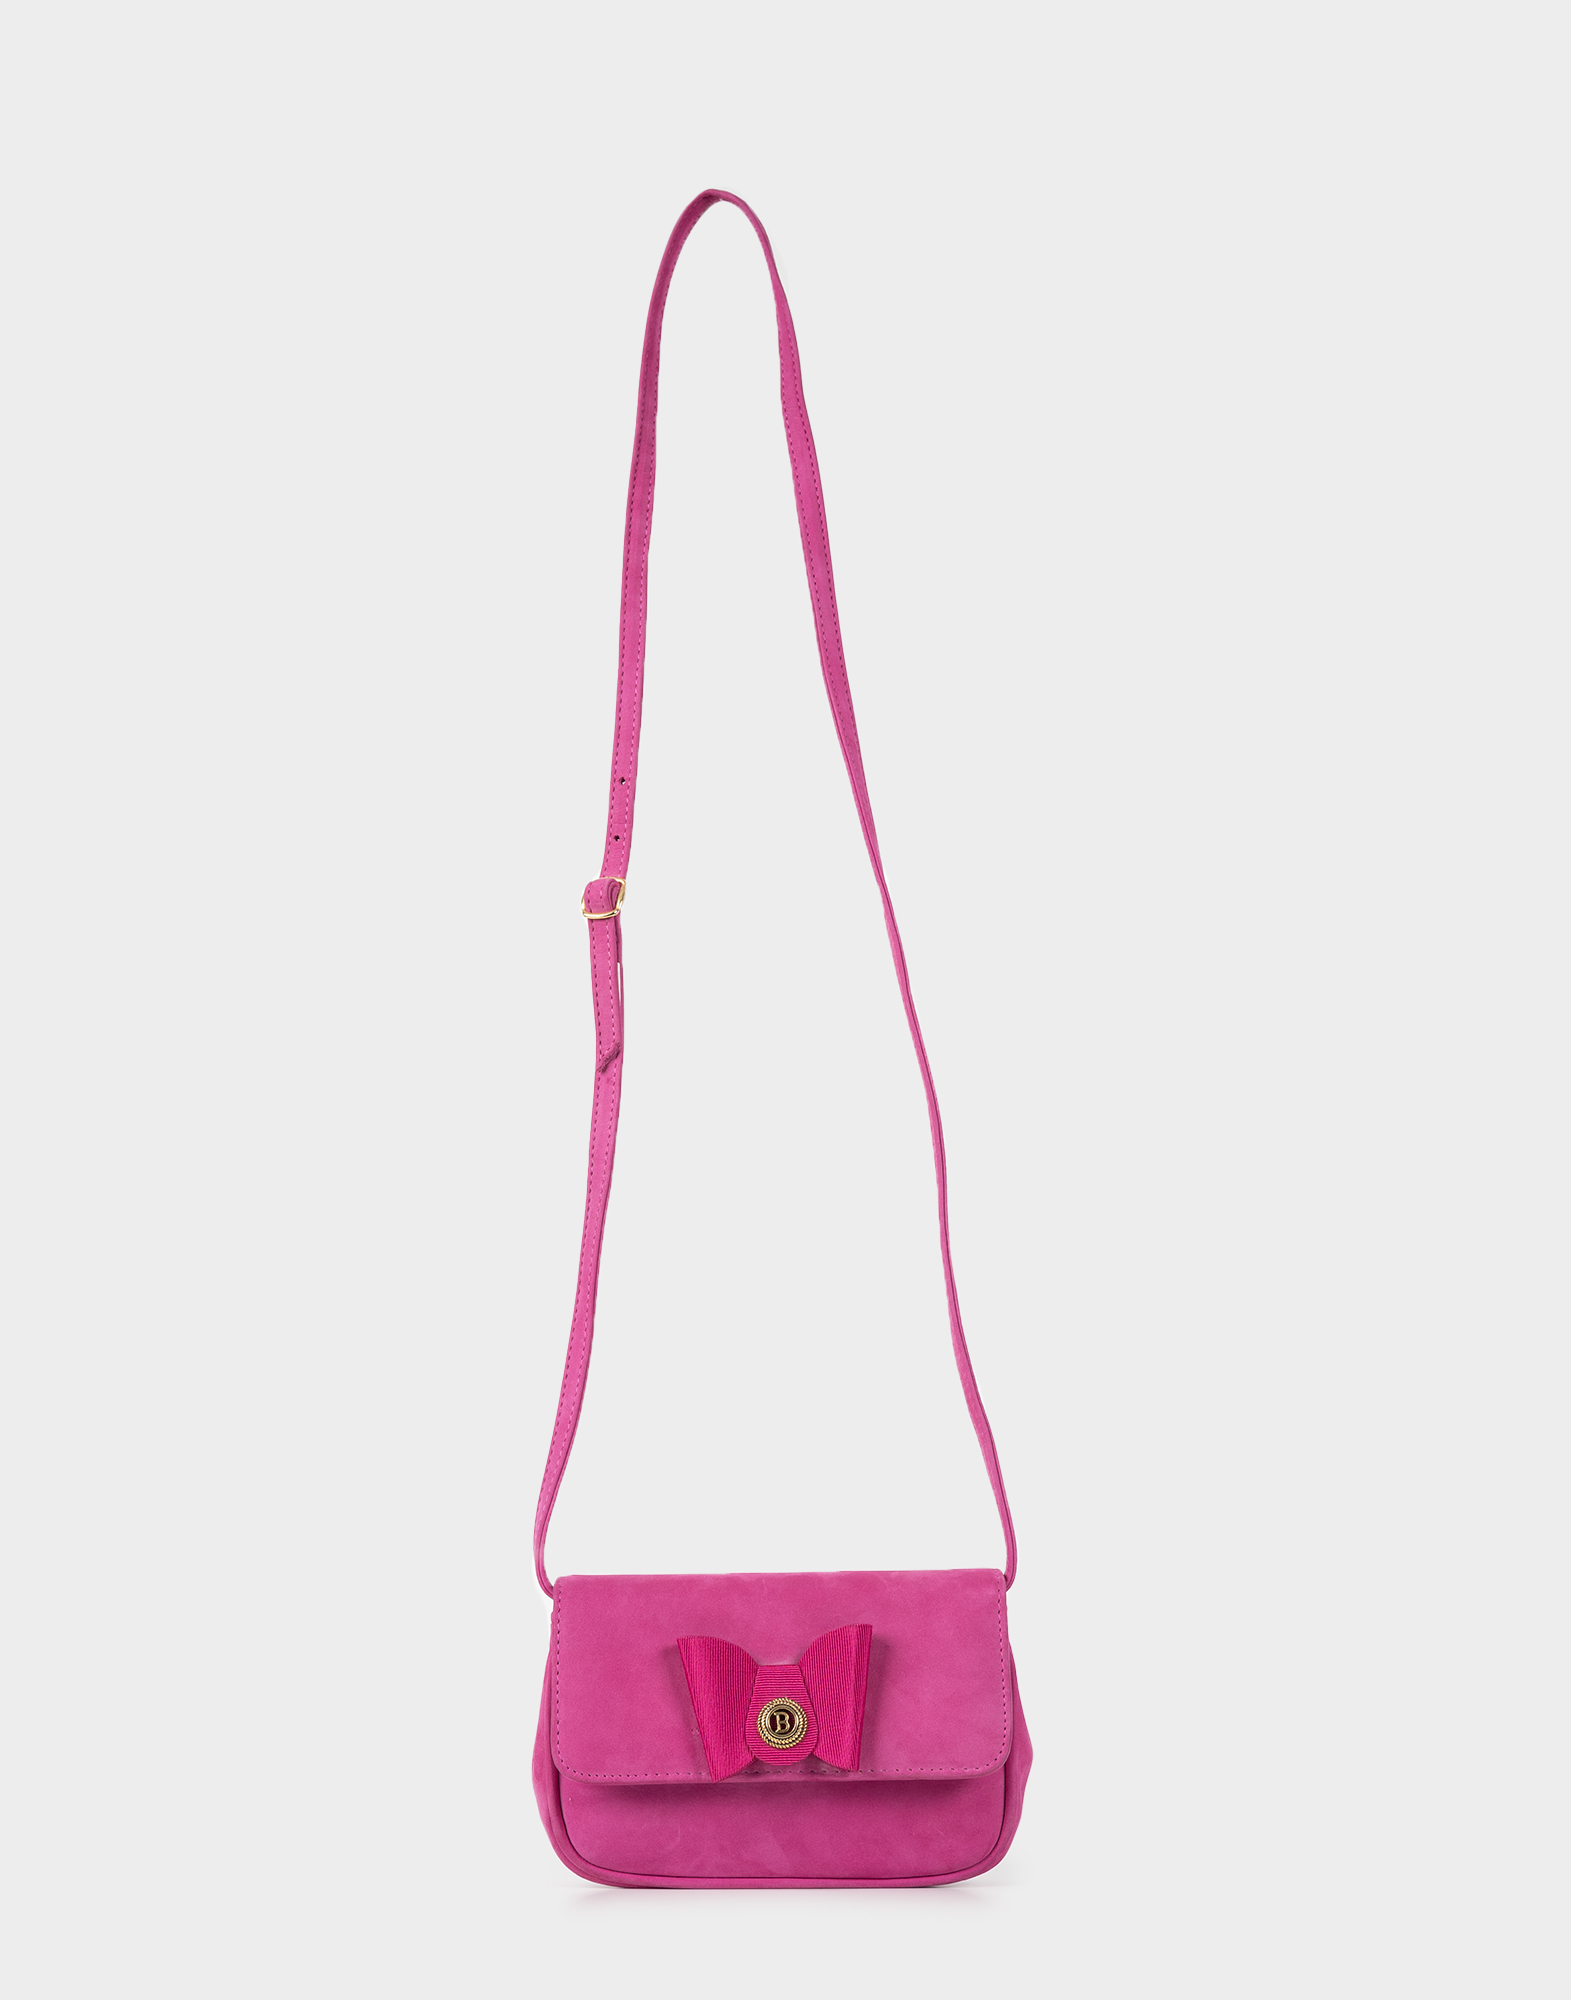 borsa piccola rosa in tessuto tipo camoscio con tracolla lunga regolabile, chiusura con patta e fiocco in raso applicato sul davanti